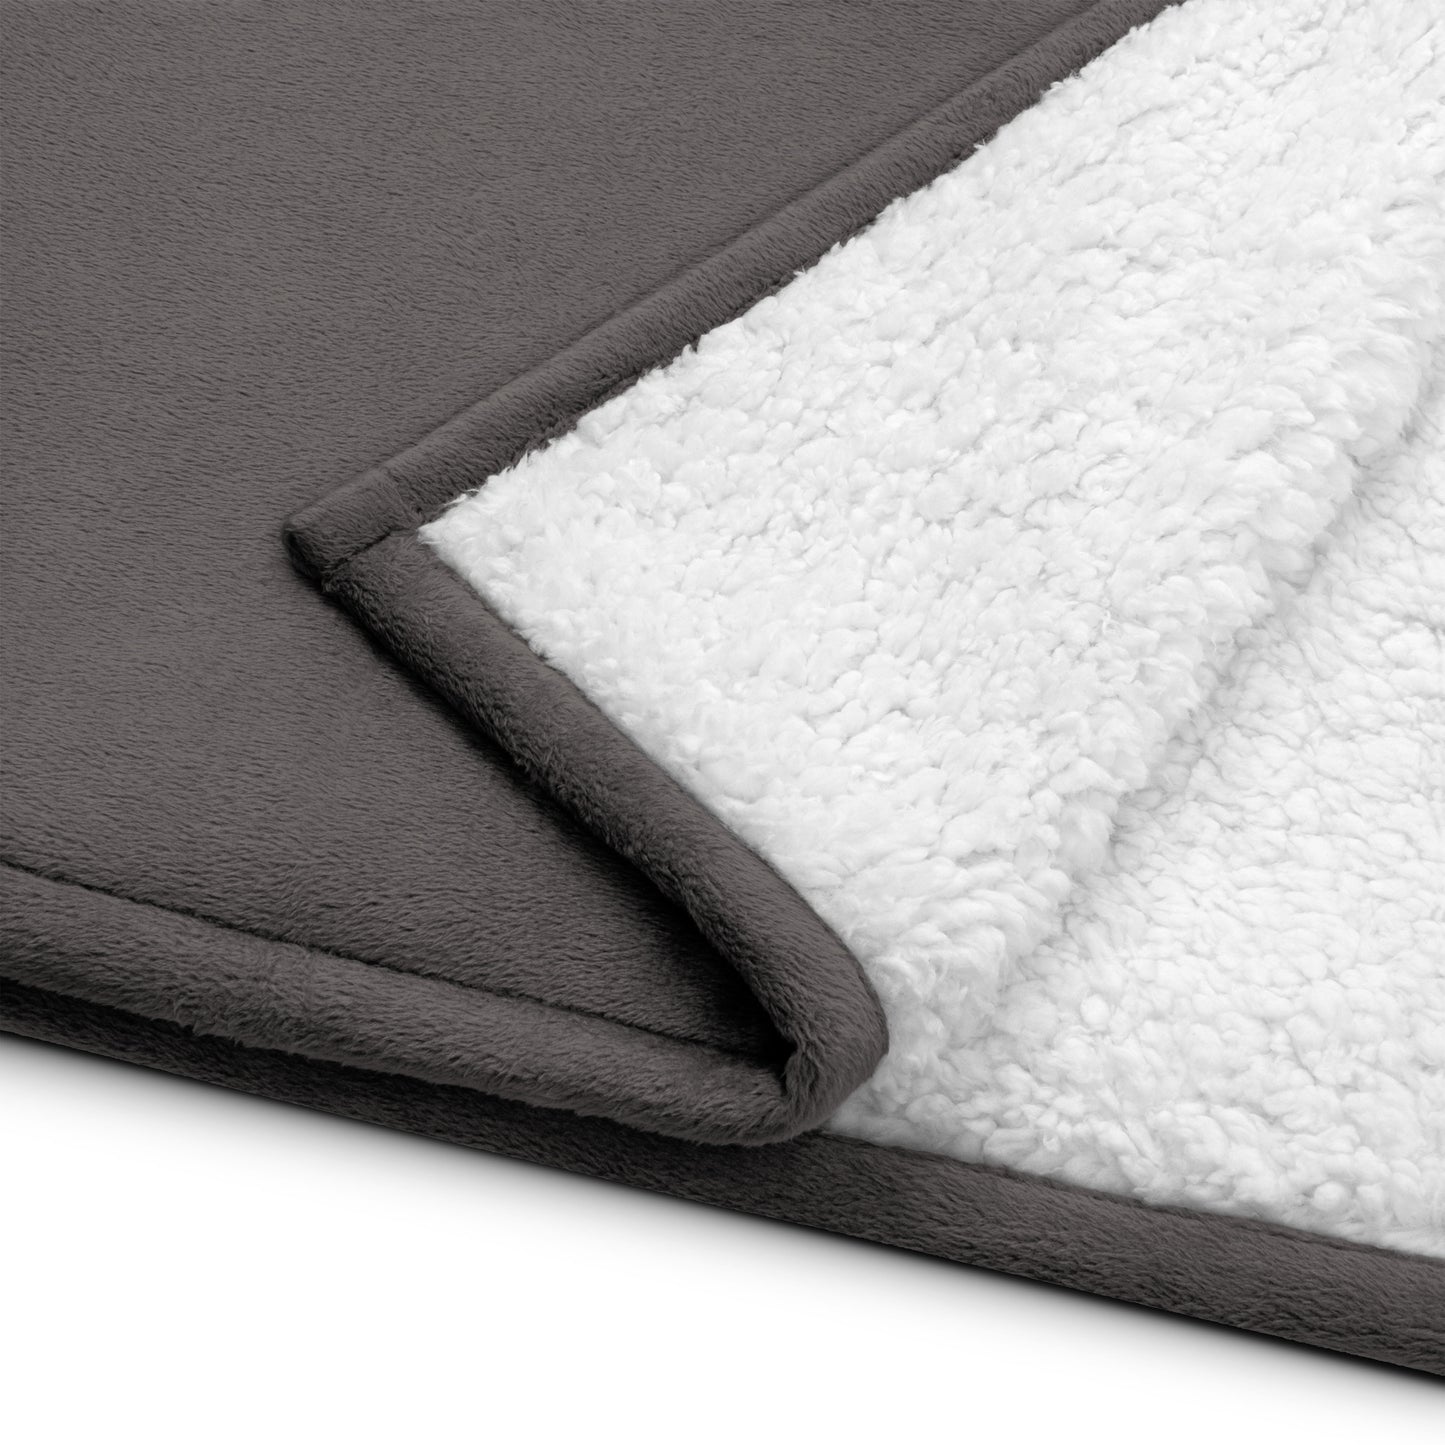 Premium sherpa blanket - Short, Sweet, Fierce